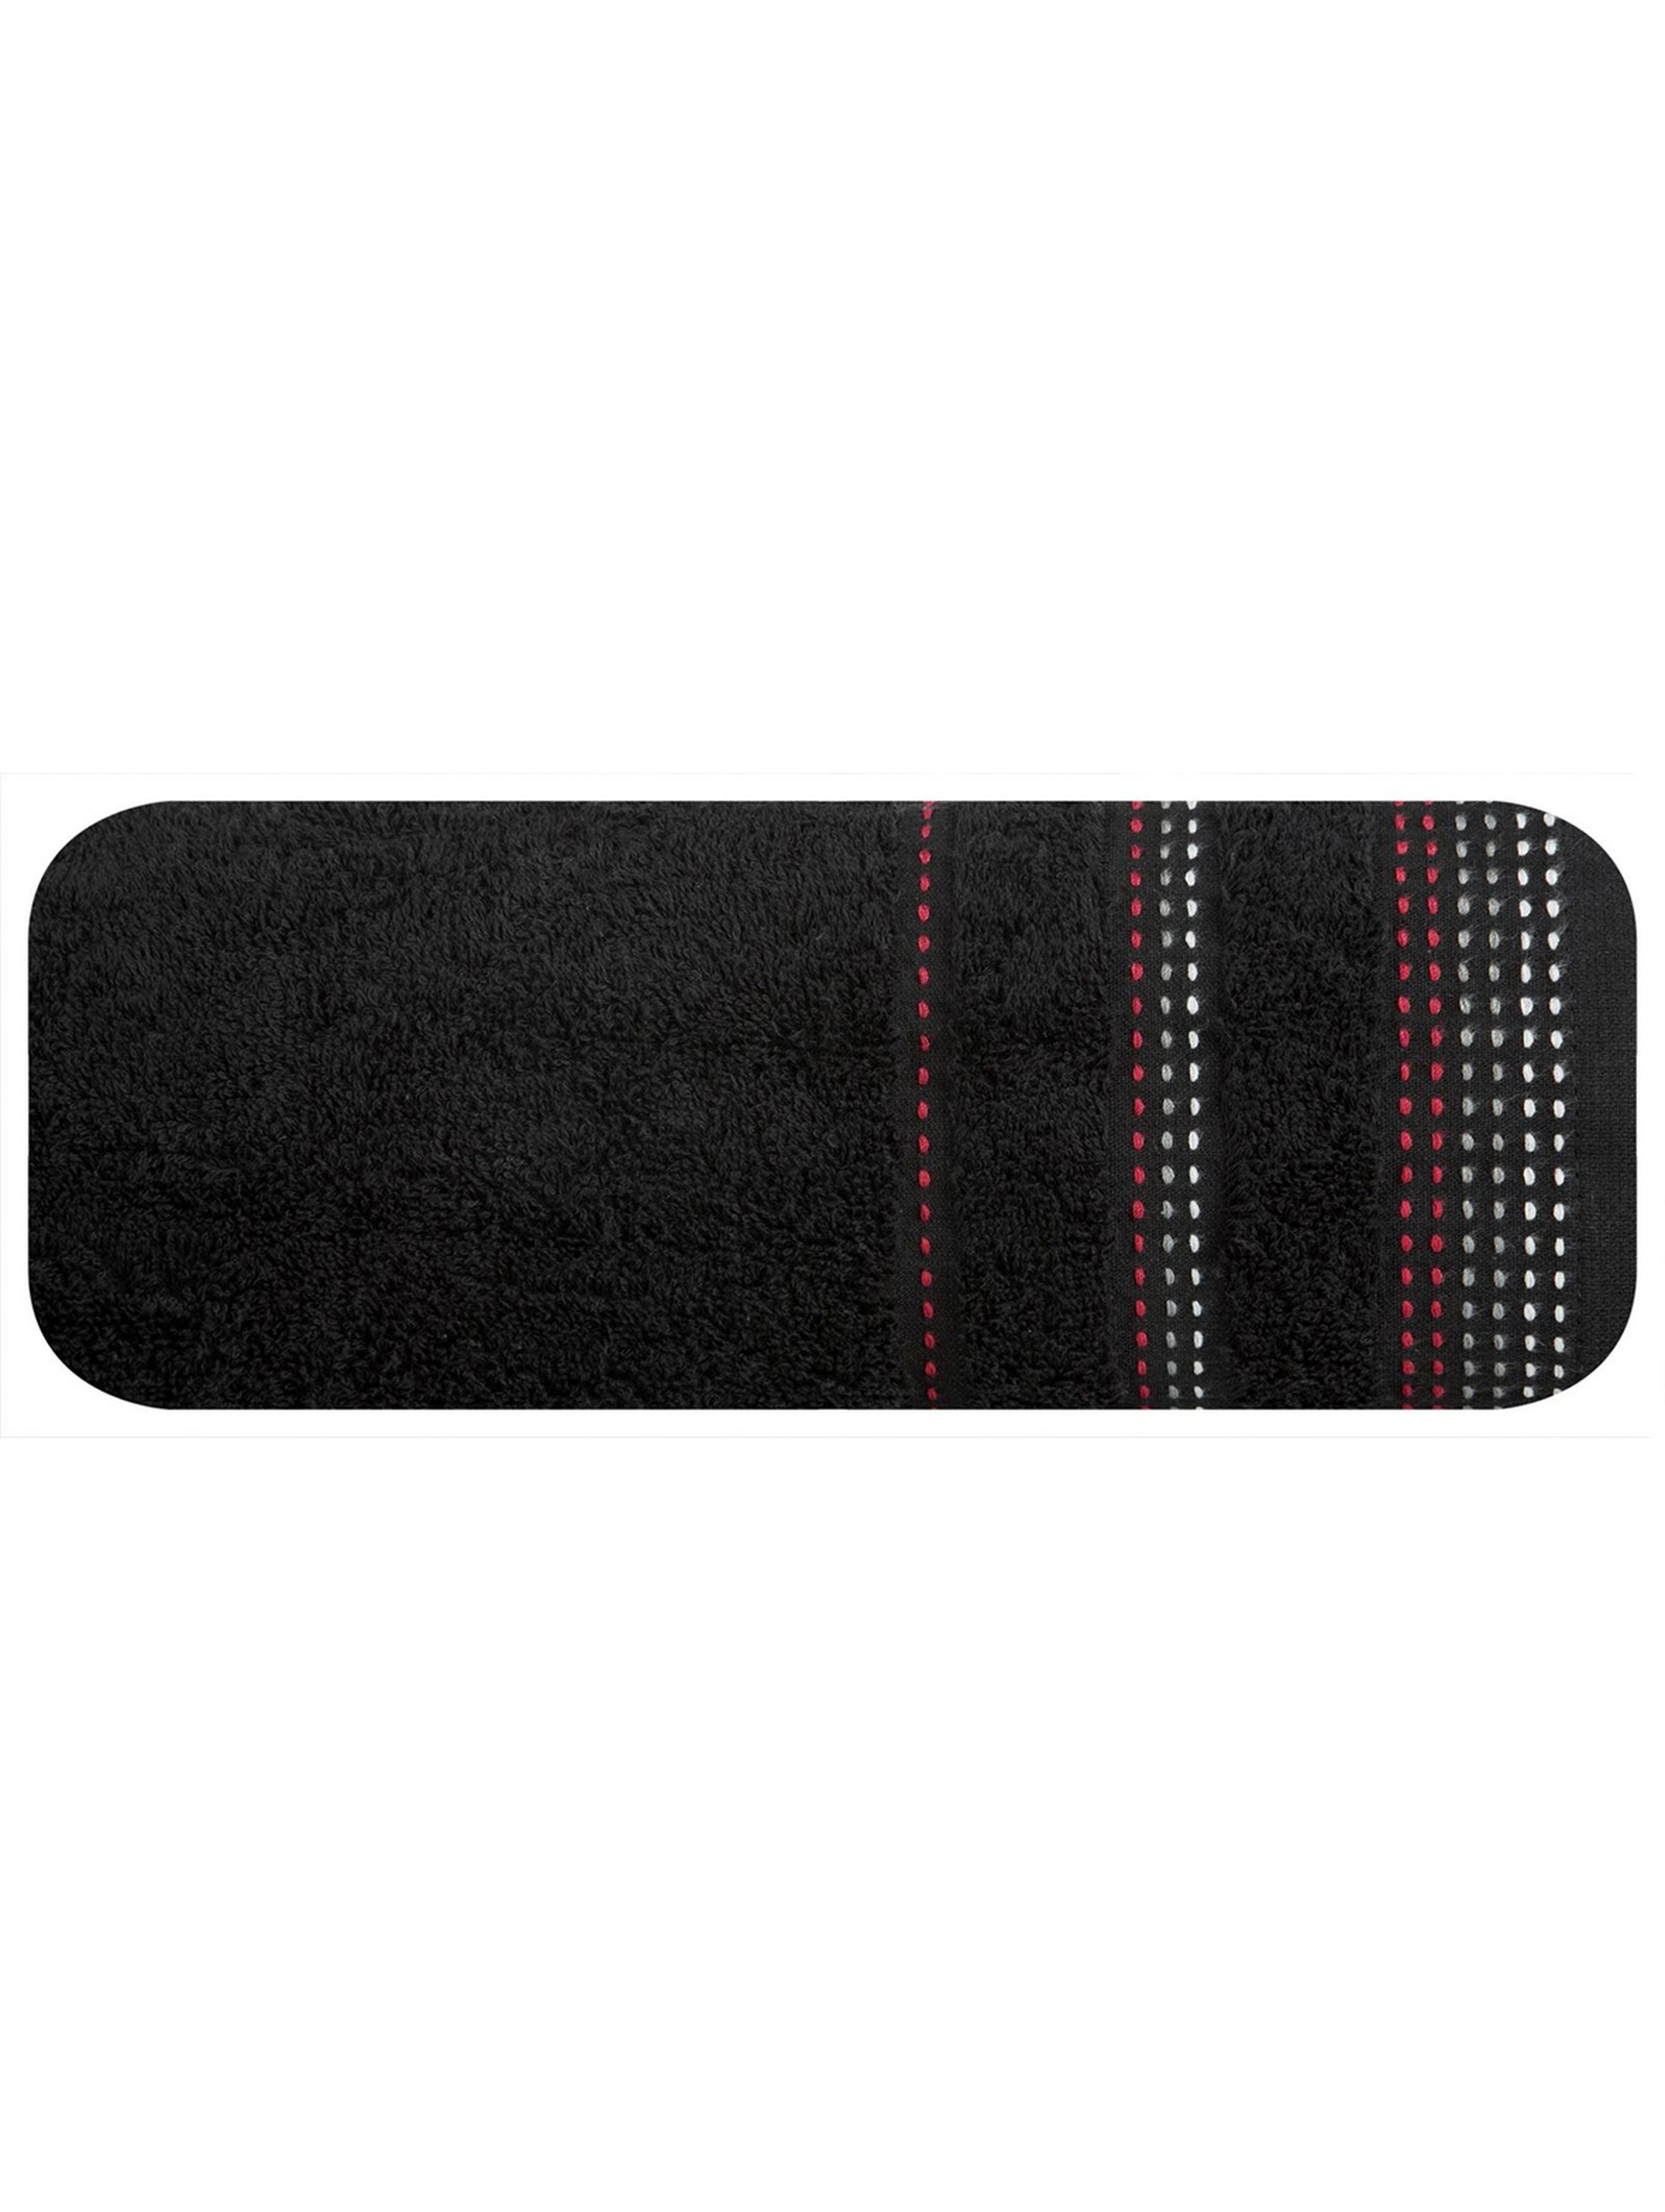 Ręcznik Pola 70x140 cm - czarny